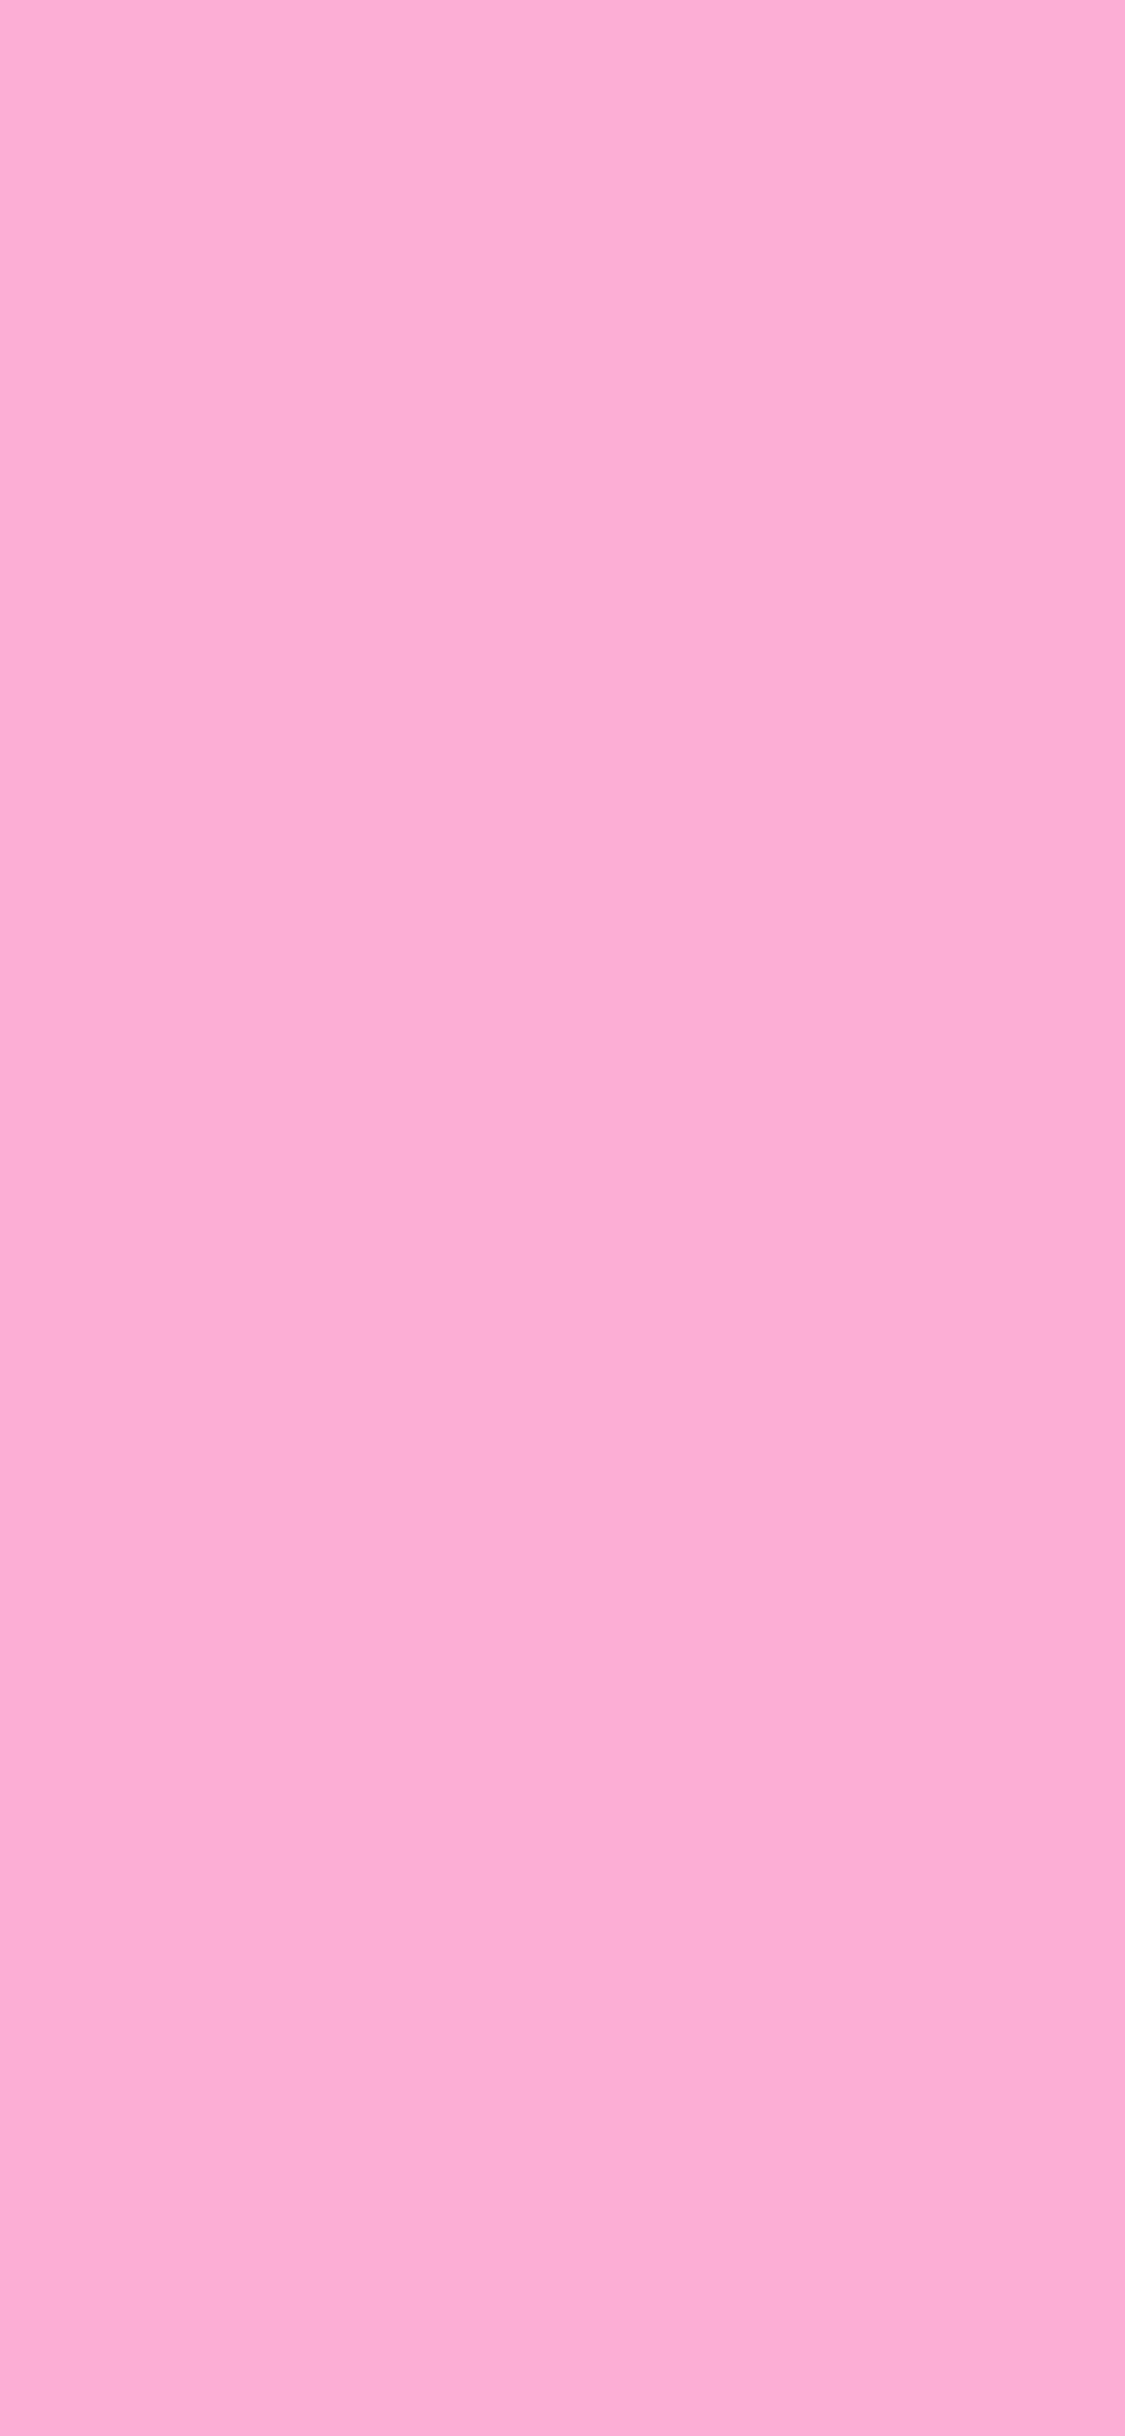 1125x2436 Lavender Pink Solid Color Background